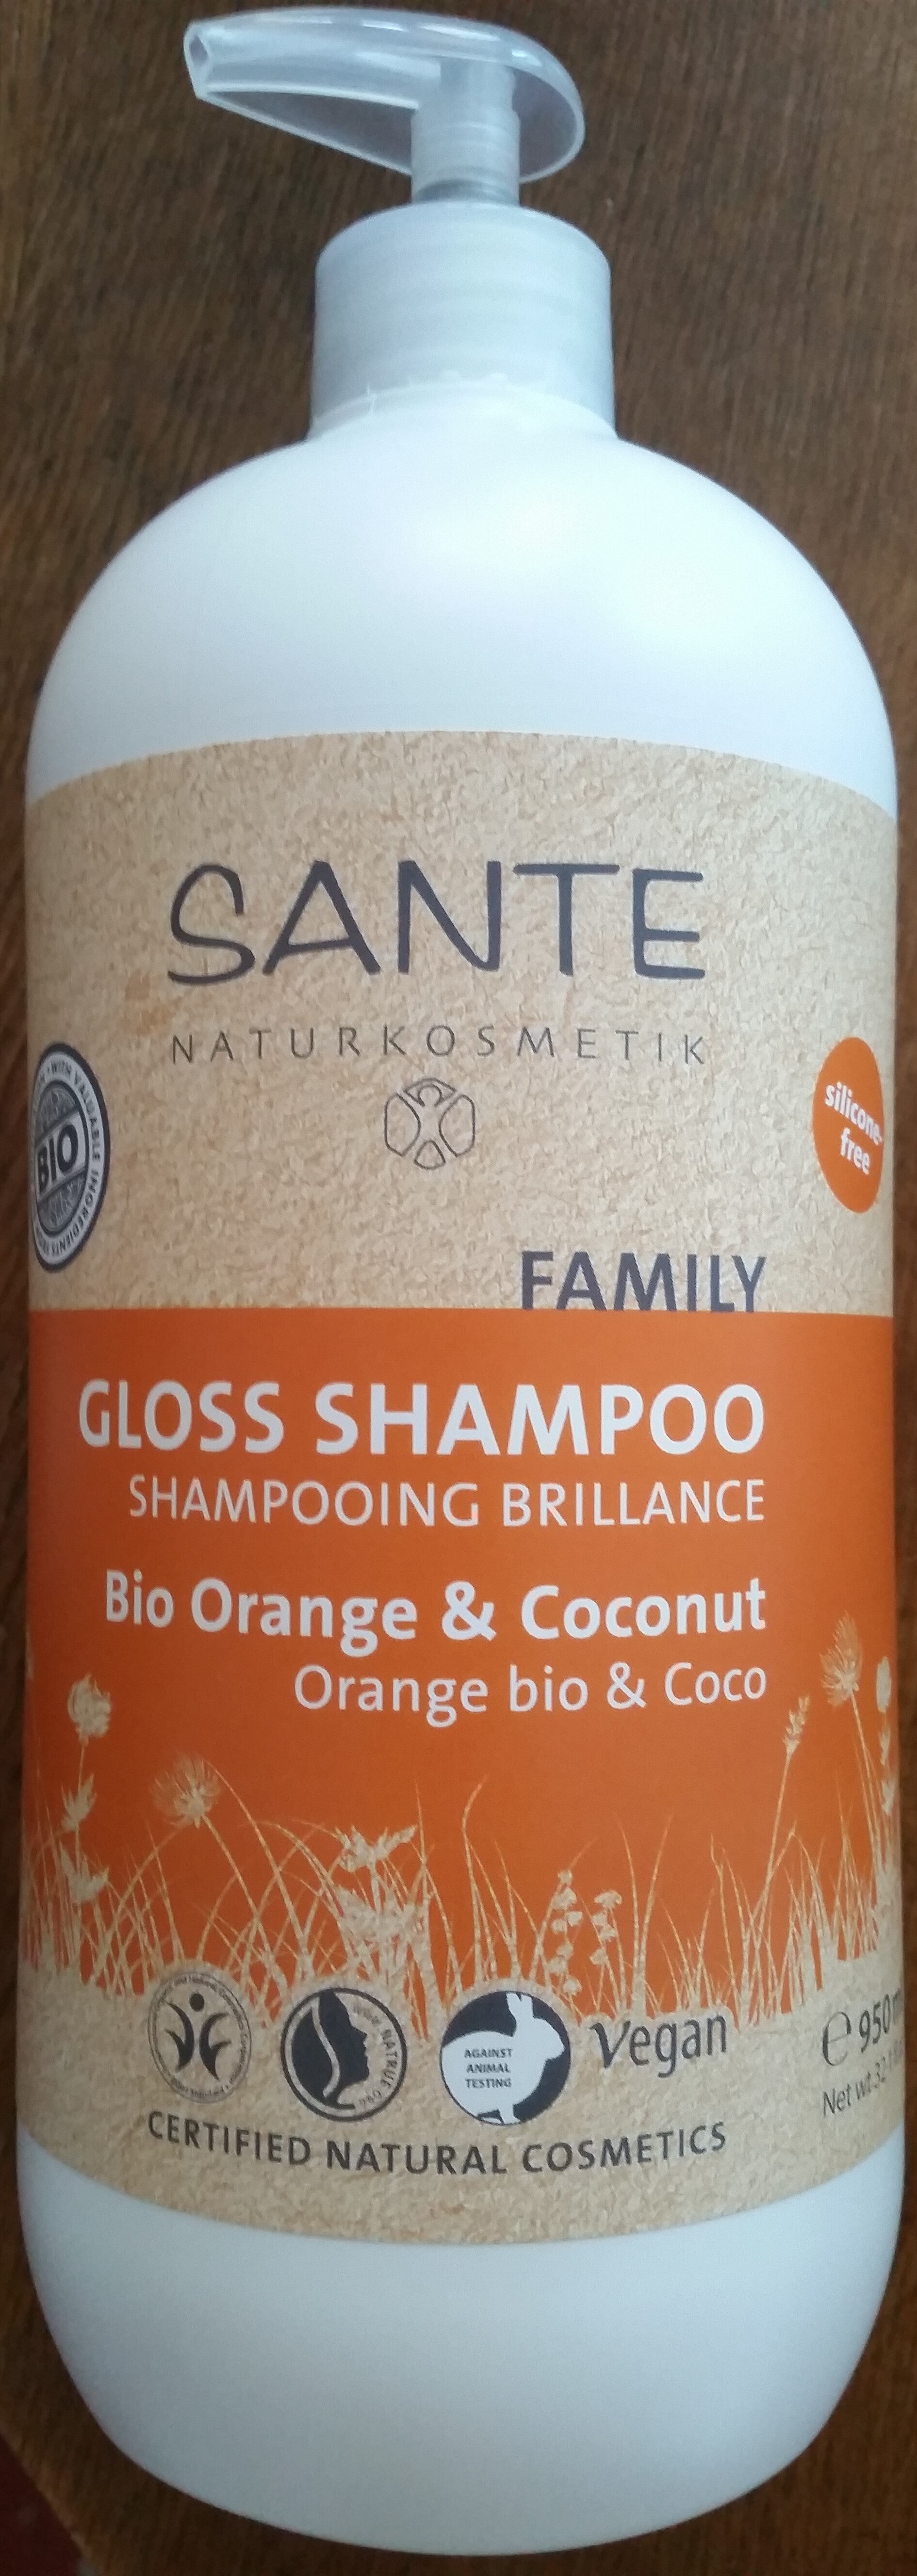 Shampooing Brillance Orange bio & Coco - Tuote - fr